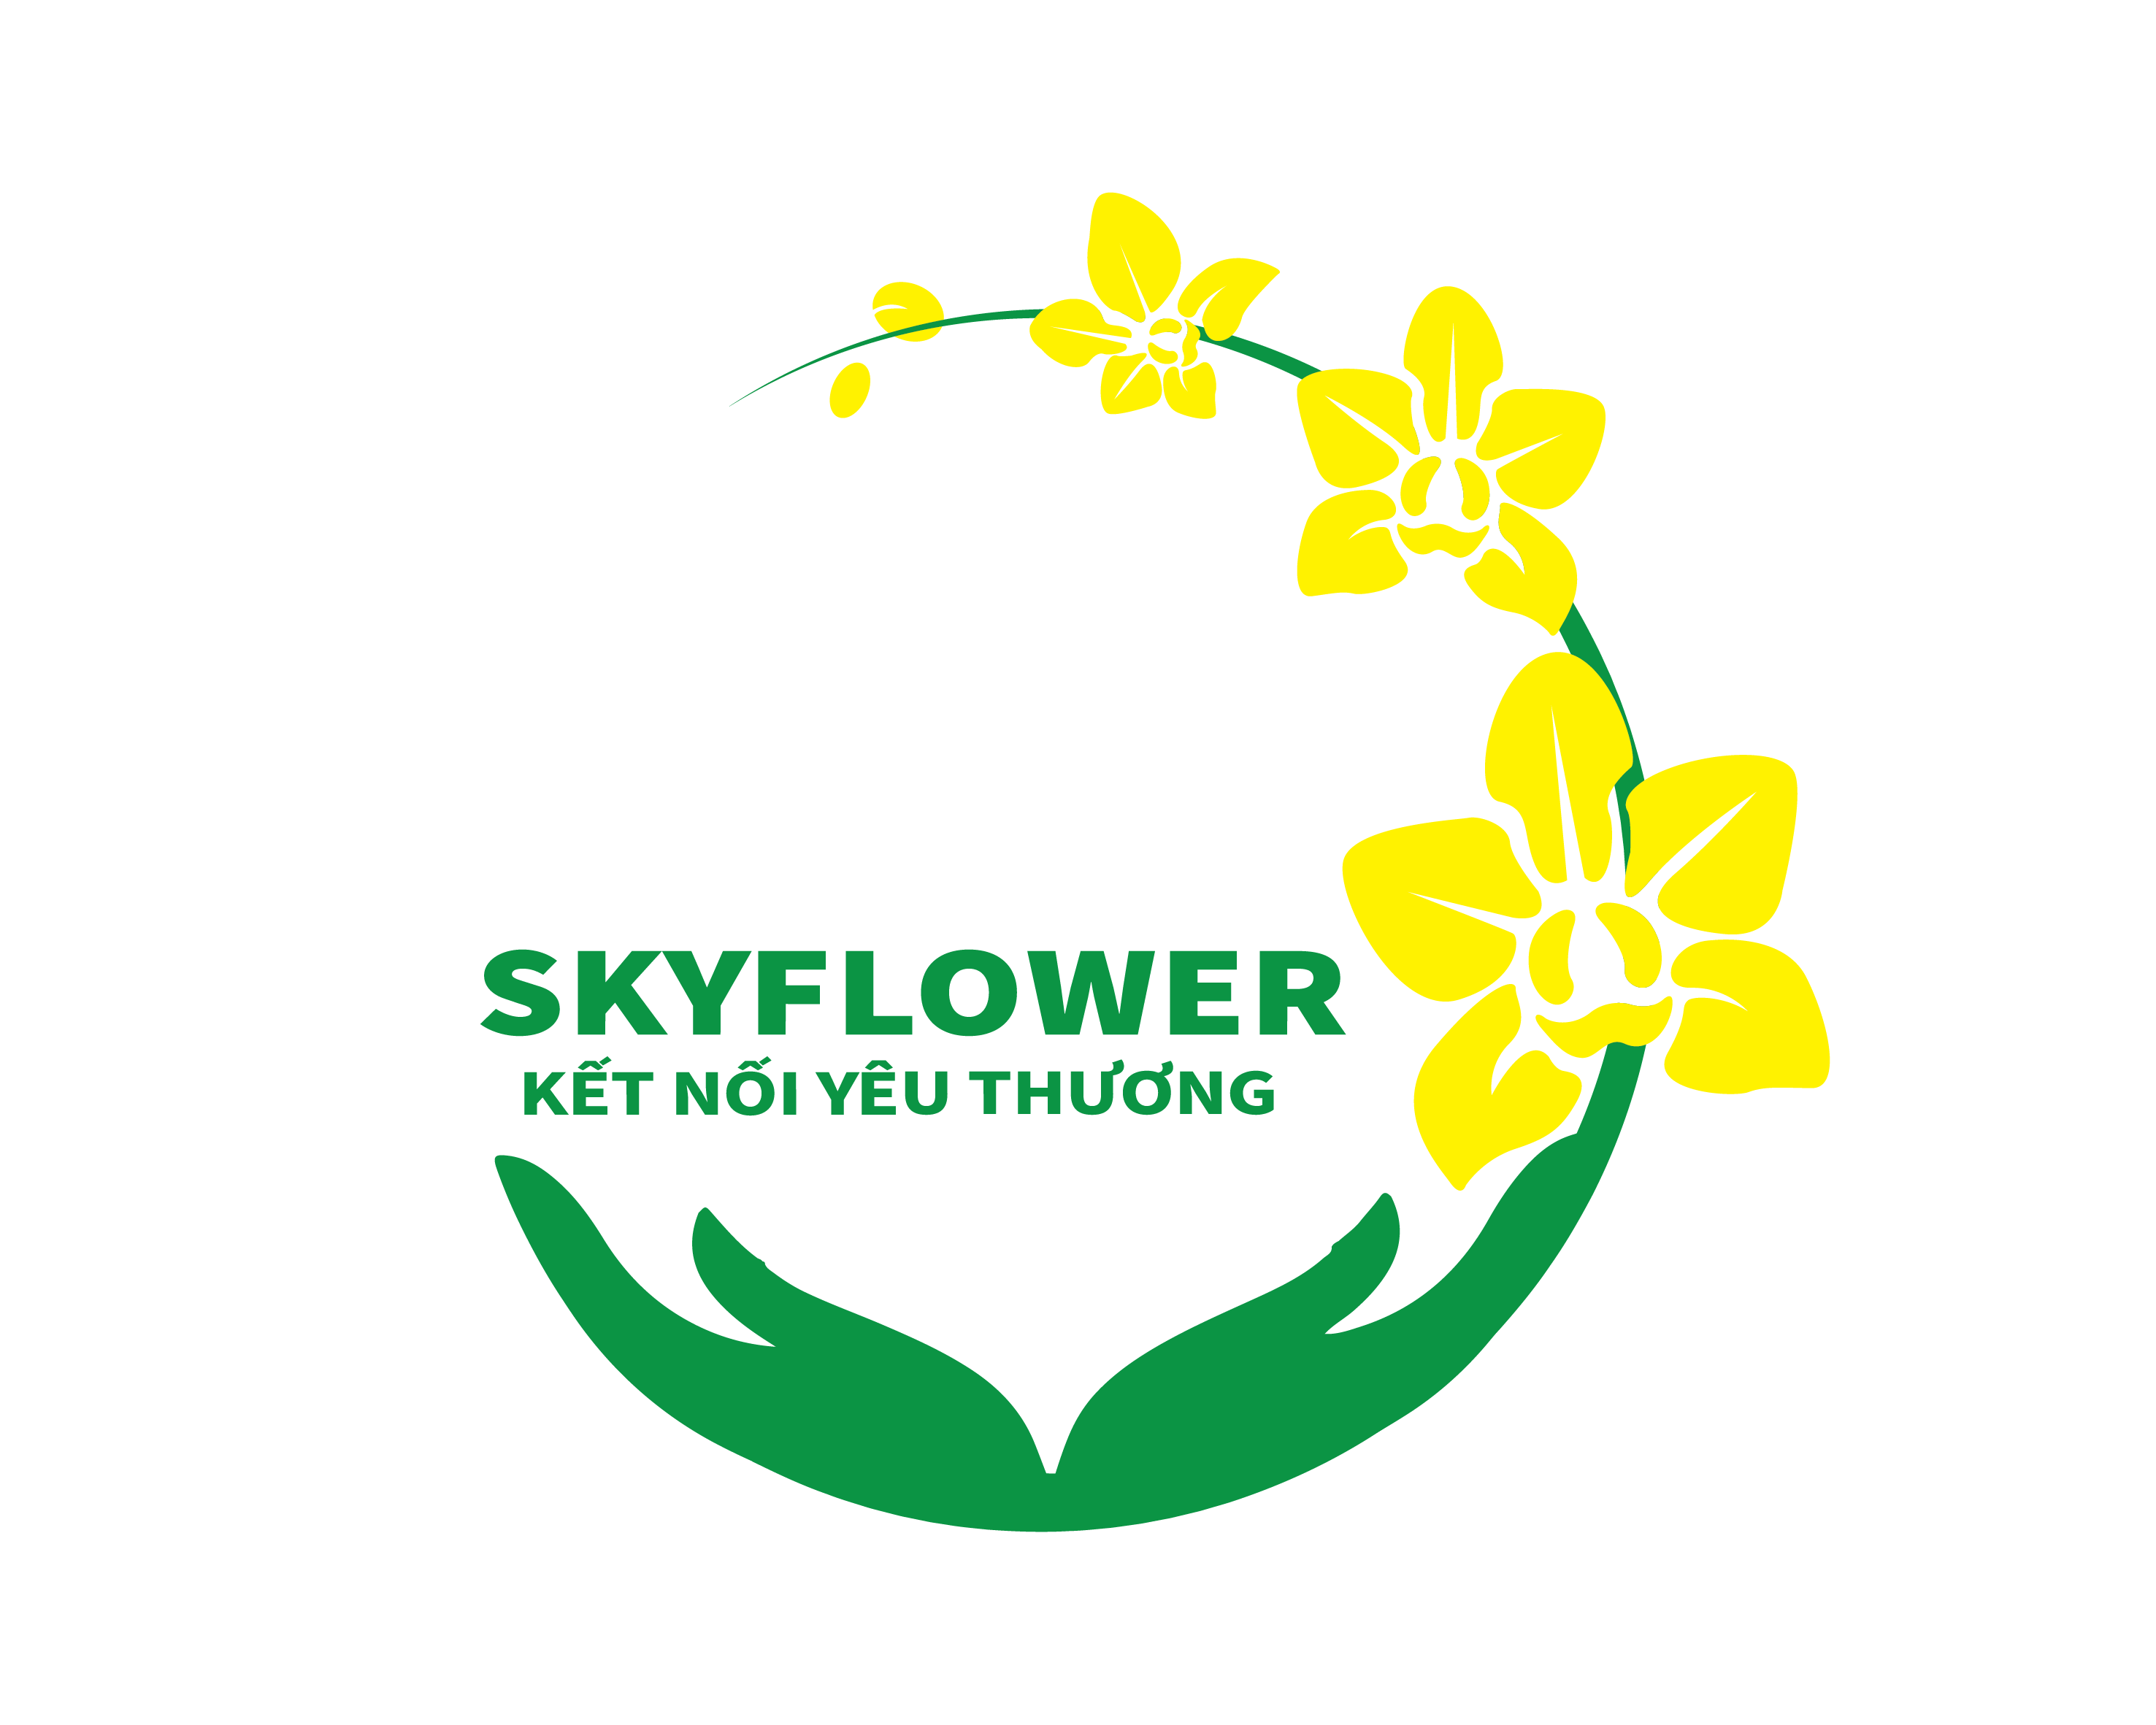 Cửa Hàng Hoa Tươi Và Hoa Lan Hồ Điệp| Hoa lan hồ điệp | hoa tươi|hoa chúc mừng|hoa khai trương|Skyflower.vn|